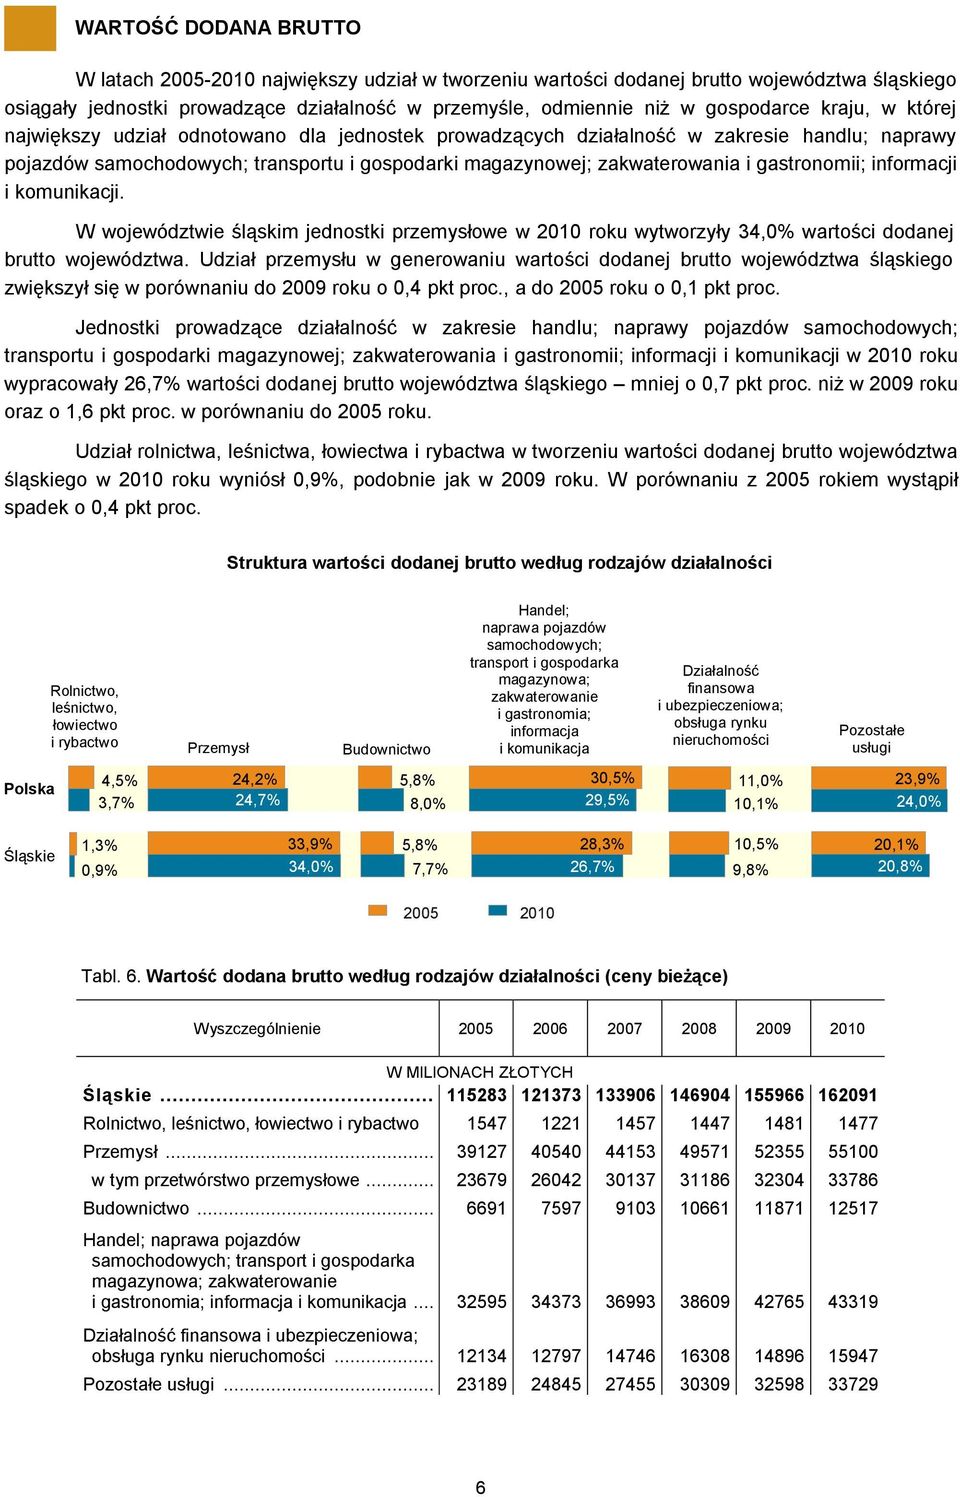 gastronomii; informacji i komunikacji. W województwie śląskim jednostki przemysłowe w 2010 roku wytworzyły 34,0% wartości dodanej brutto województwa.